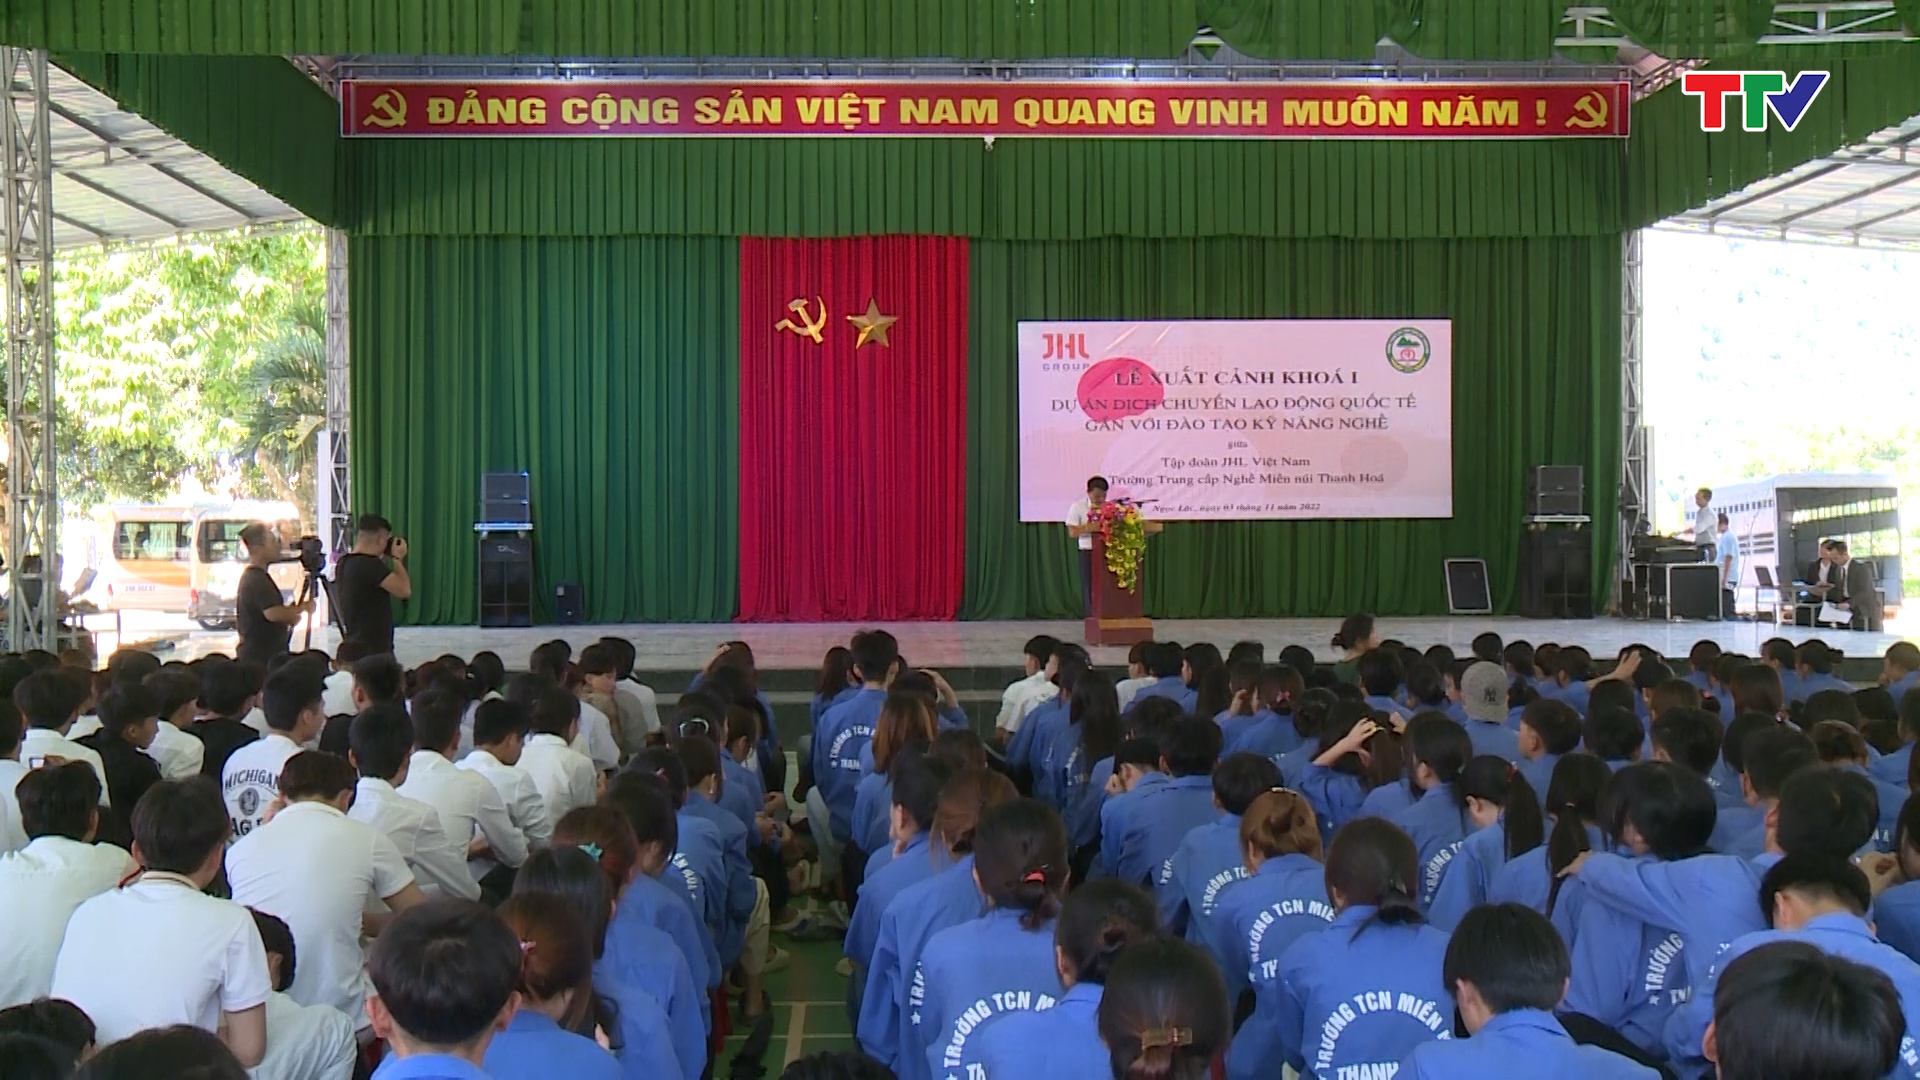 Sở Lao động TBXH tổ chức lễ xuất cảnh khóa 1 cho học sinh Trường Trung cấp nghề miền núi Thanh Hóa - Ảnh 2.